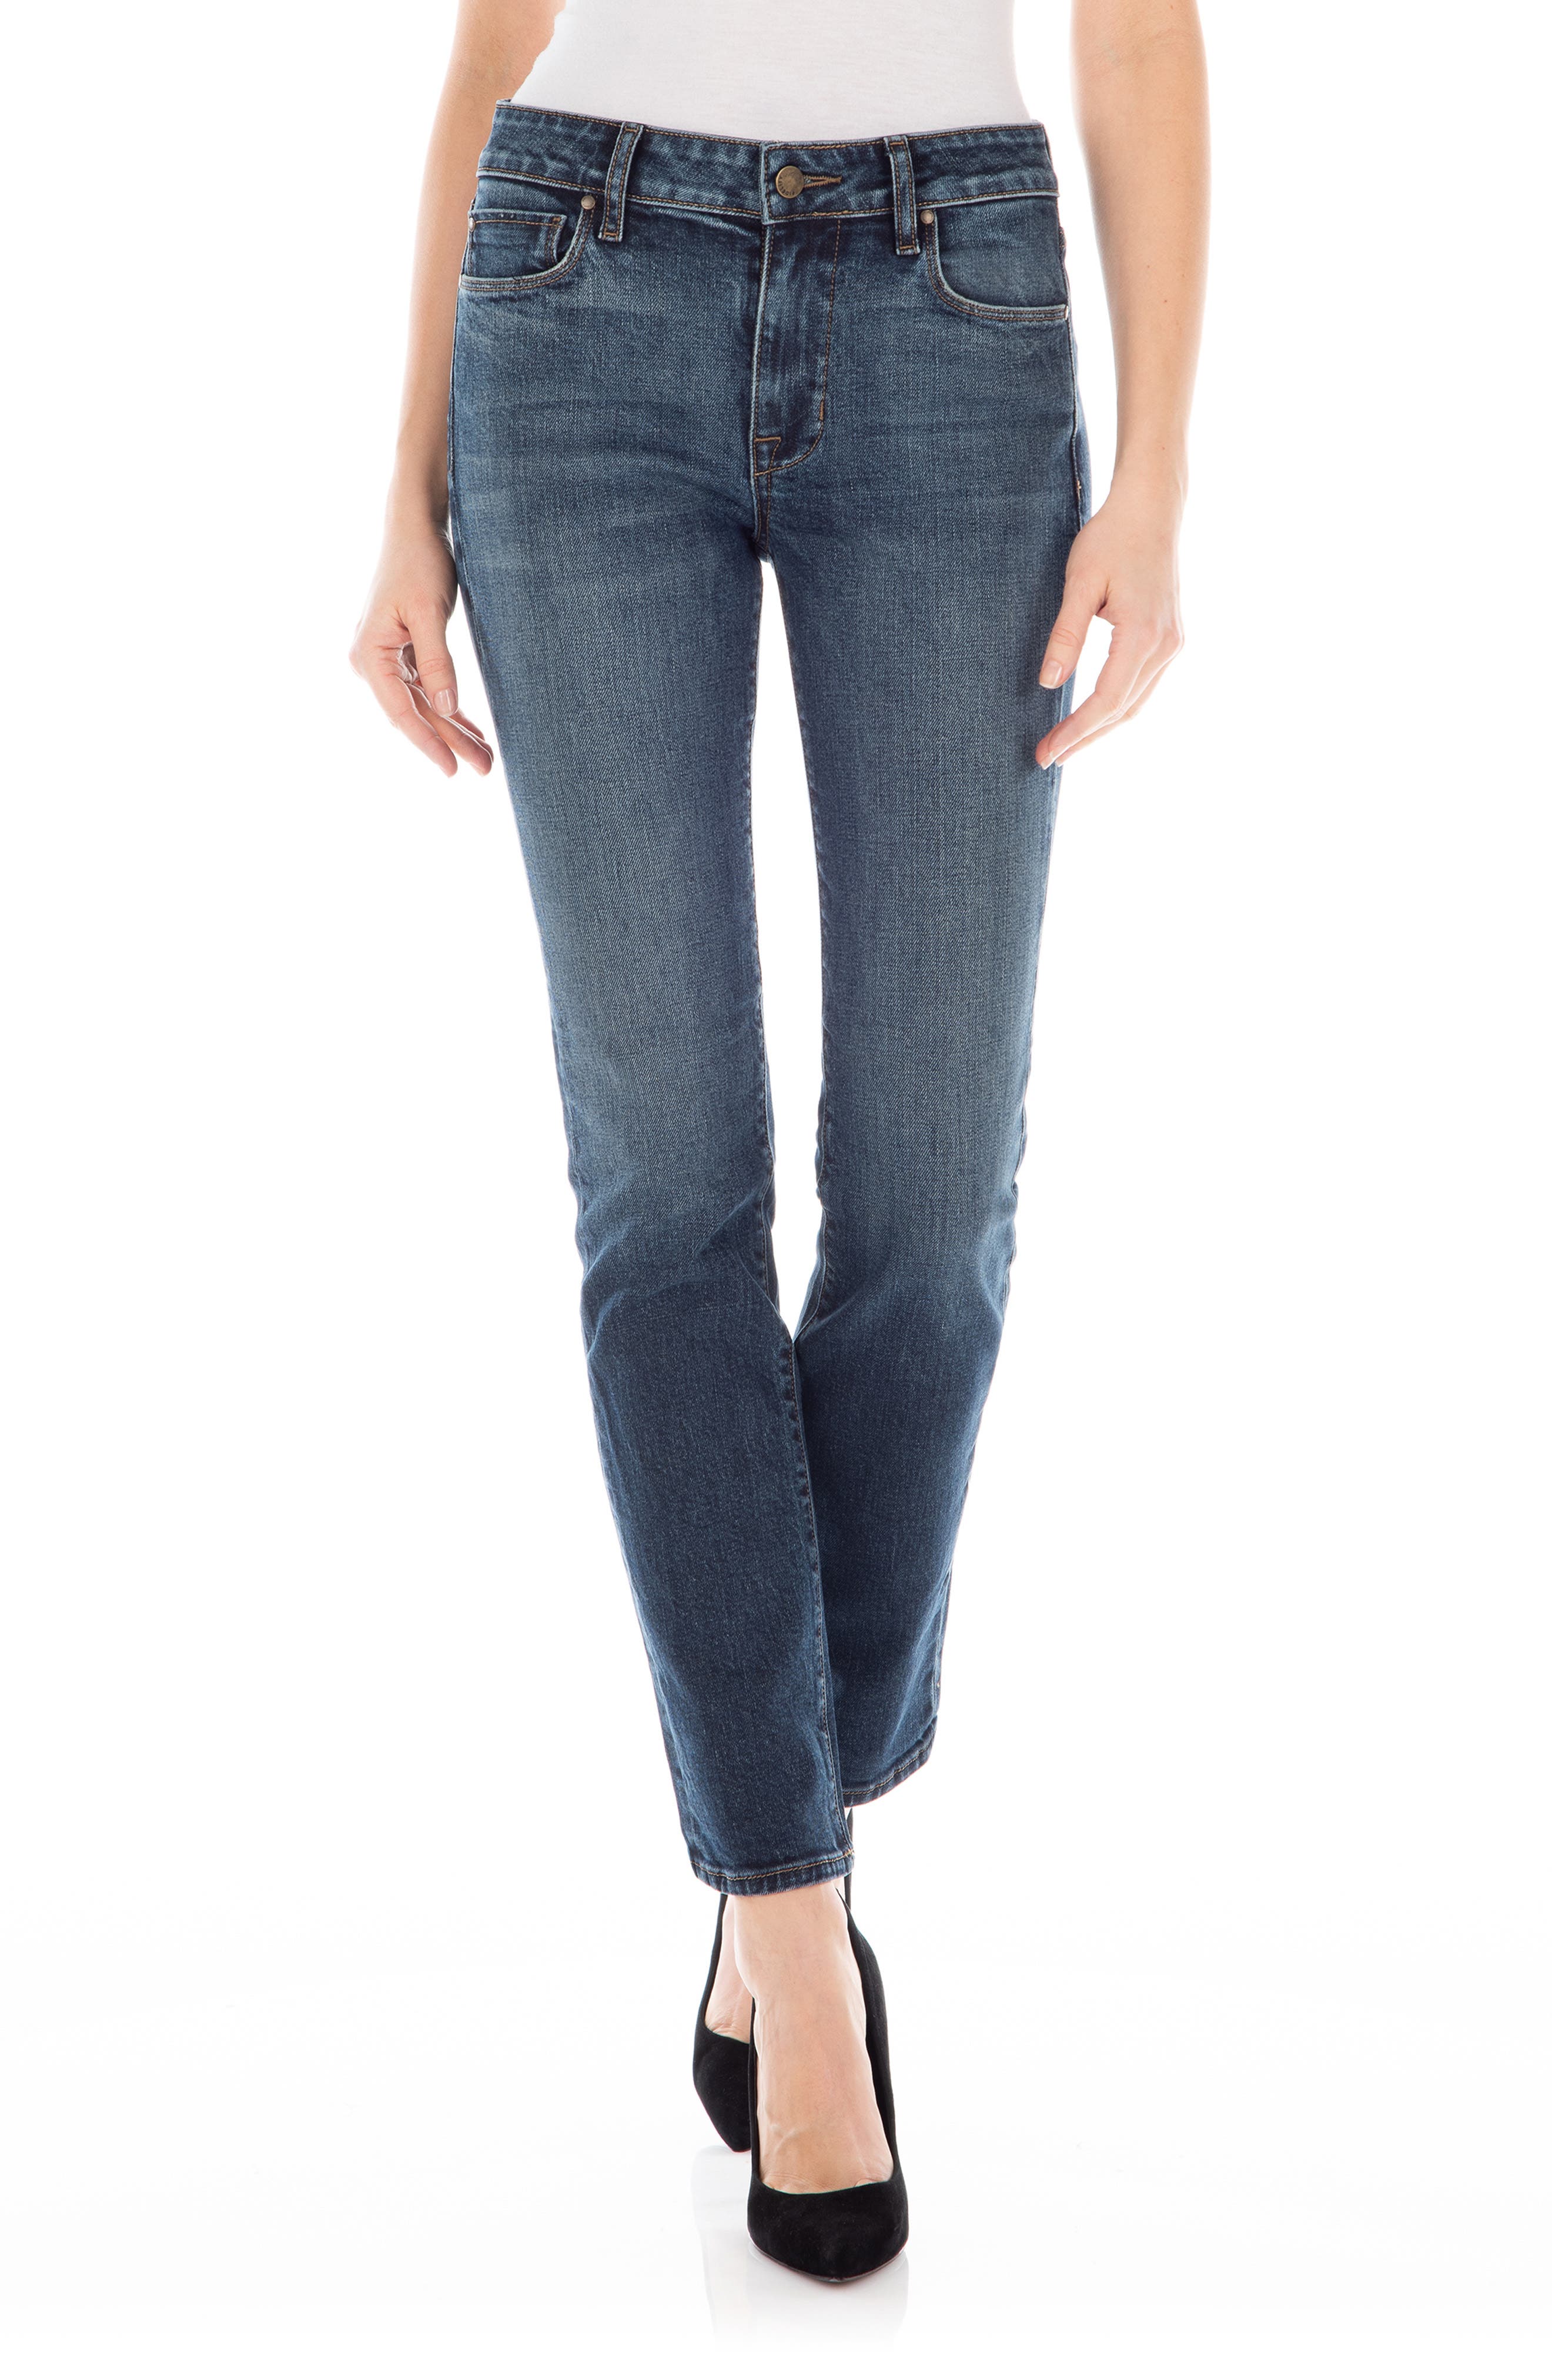 fidelity jeans womens sale